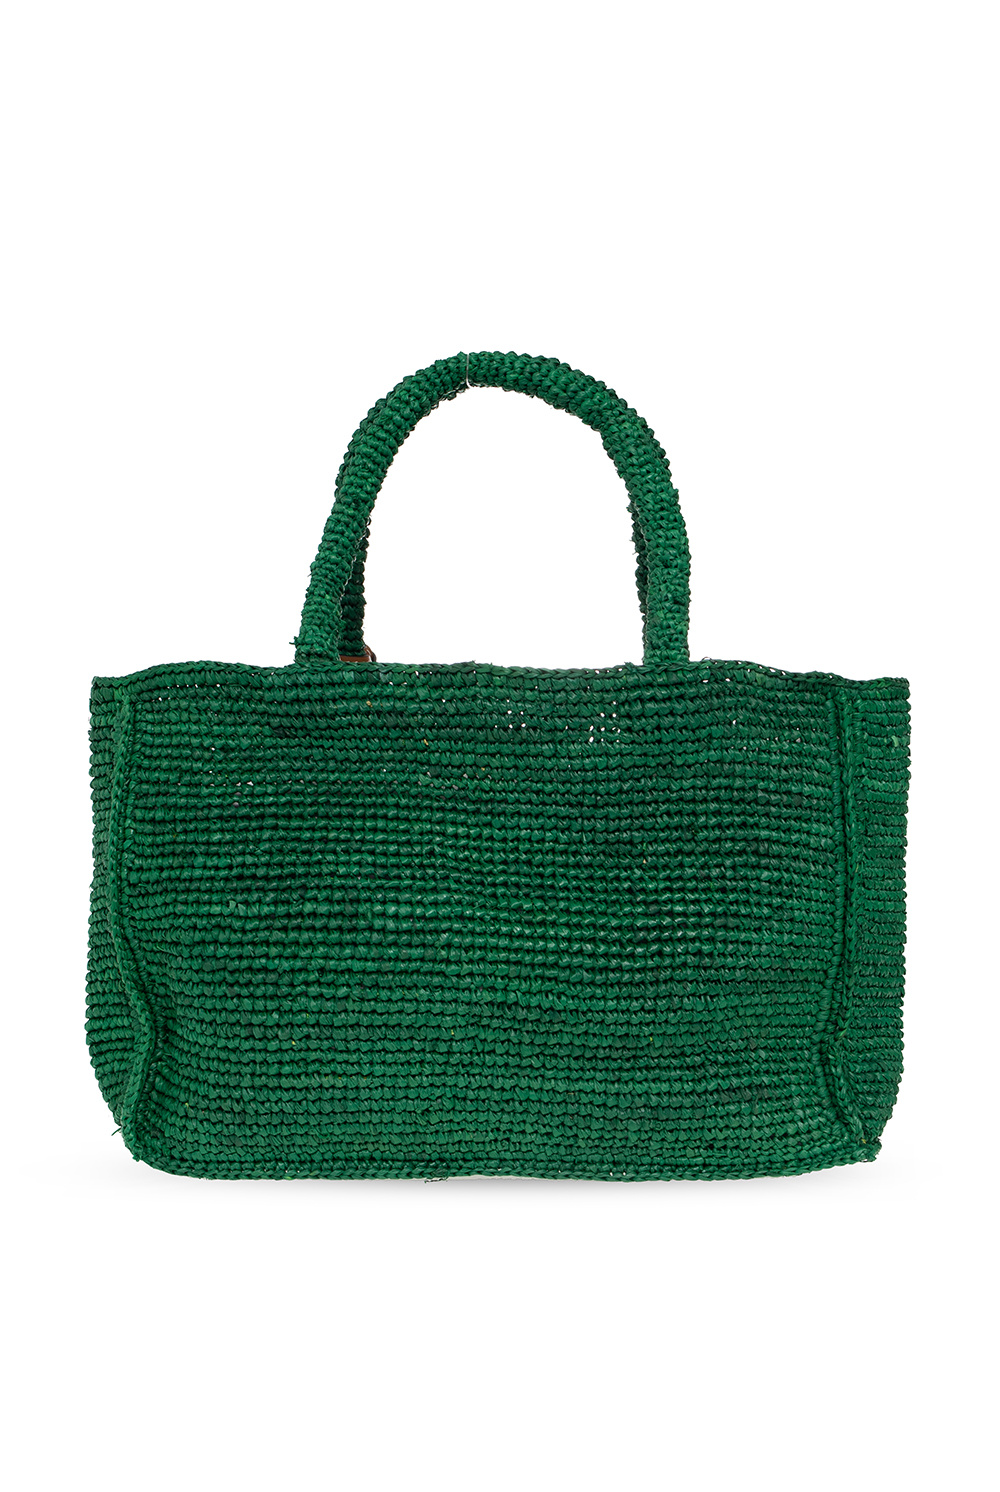 Manebí ‘Sunset Small’ handbag